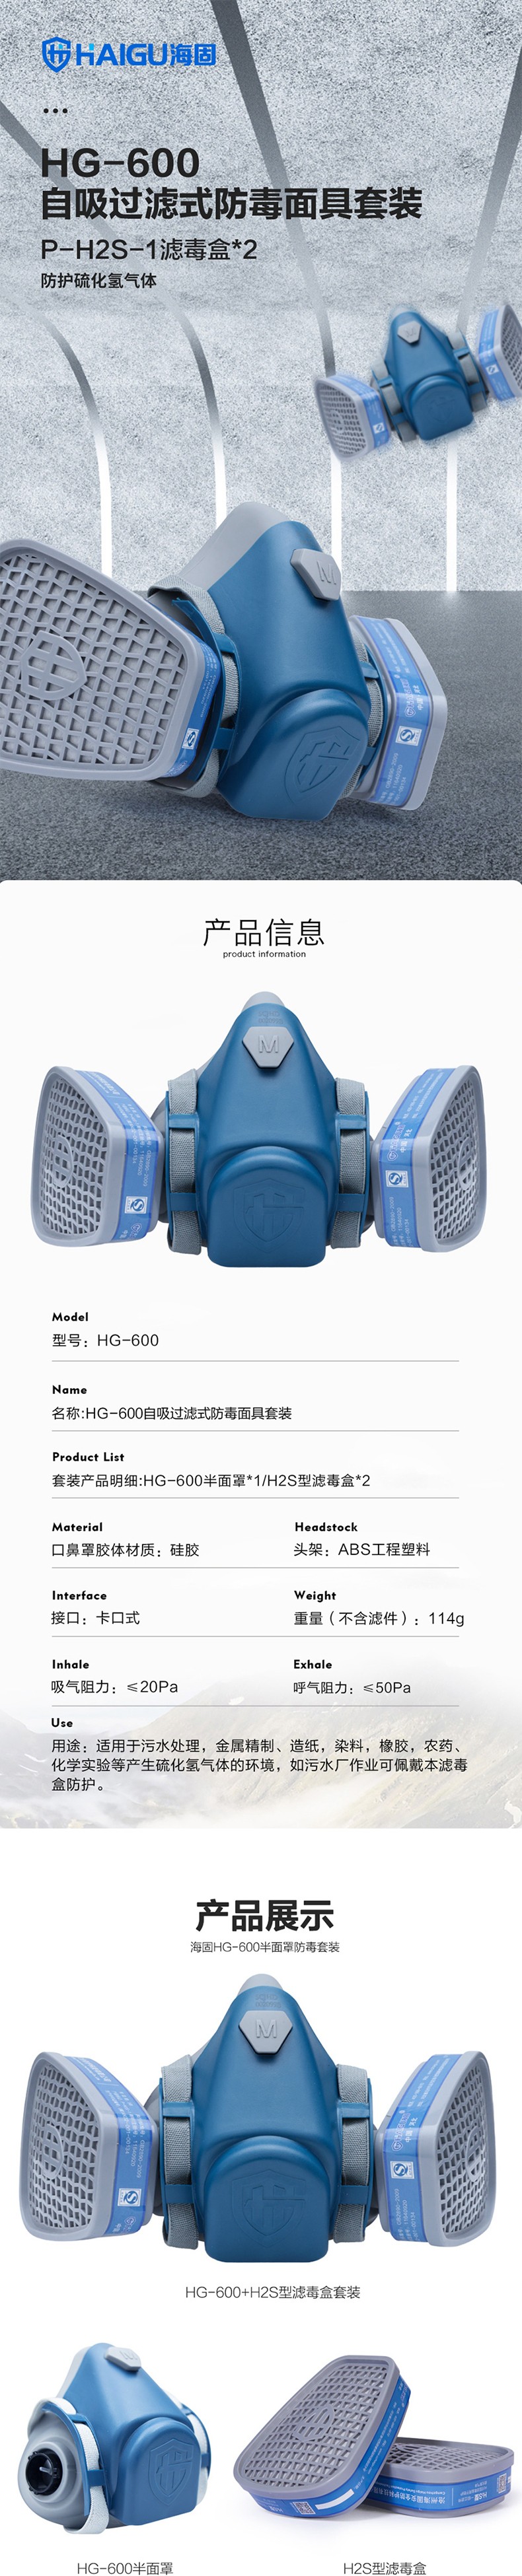 海固HG-600 P-H2S-1滤毒盒硫化氢气体防毒面具图片